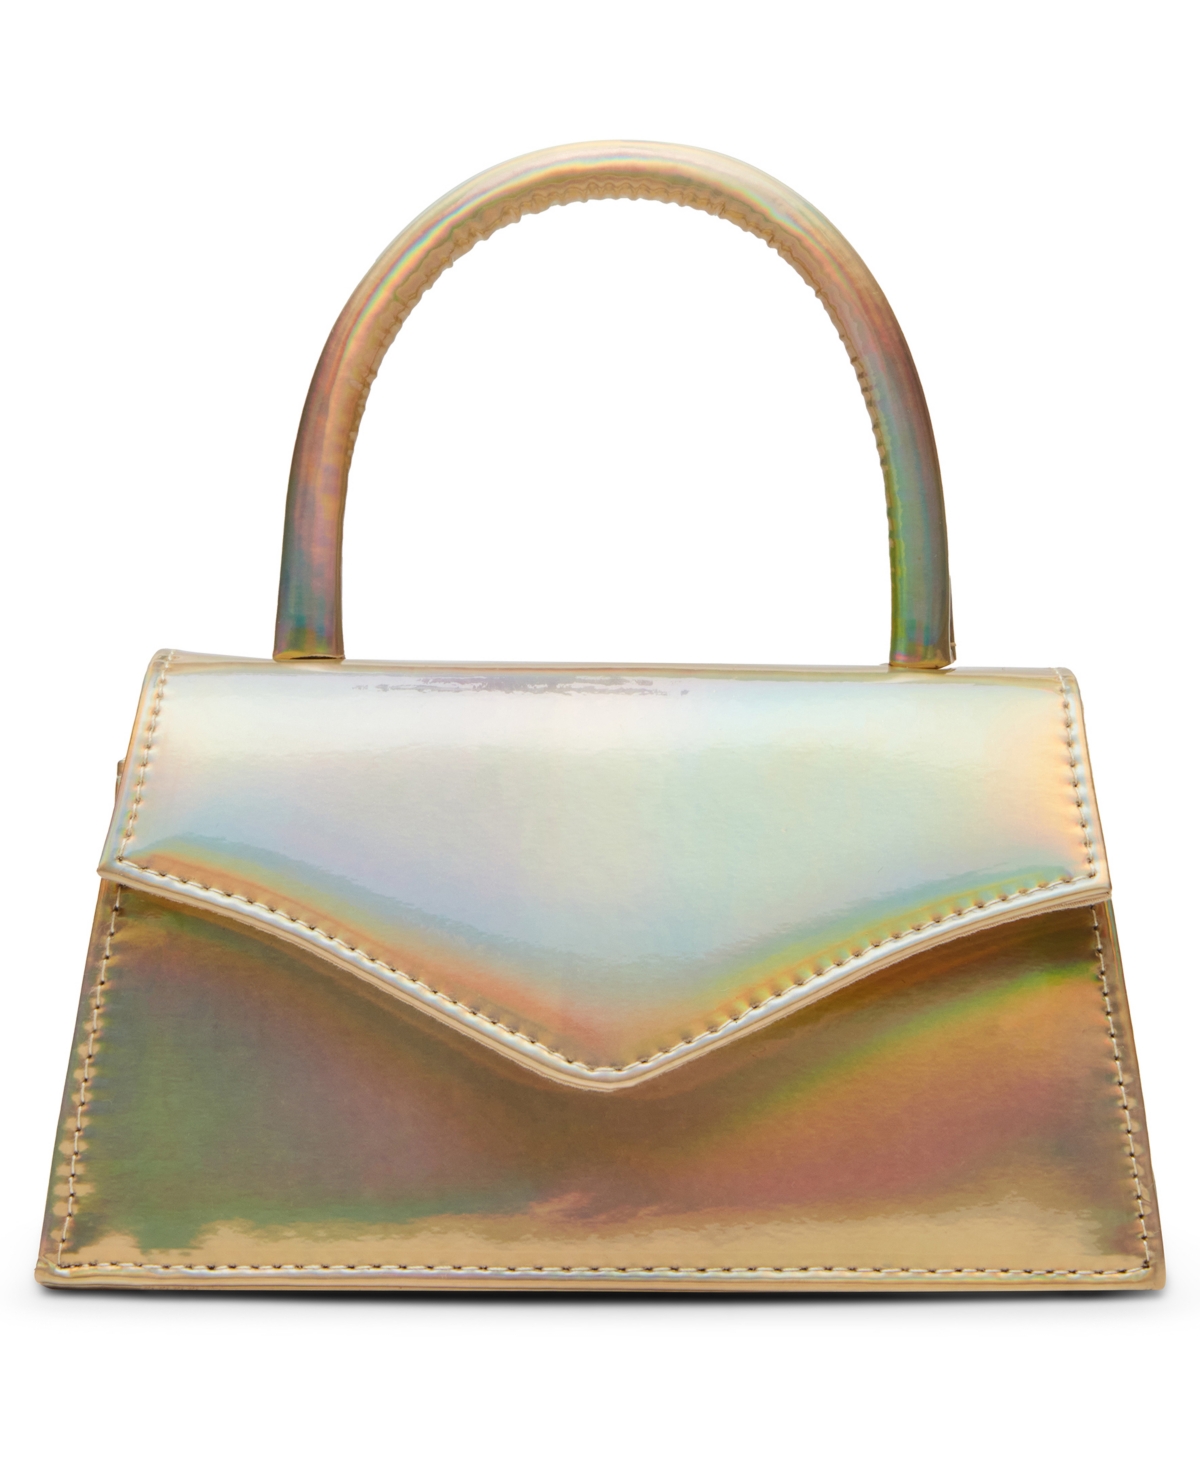 Women's Amina Iridescent Top Handle Bag - Gold